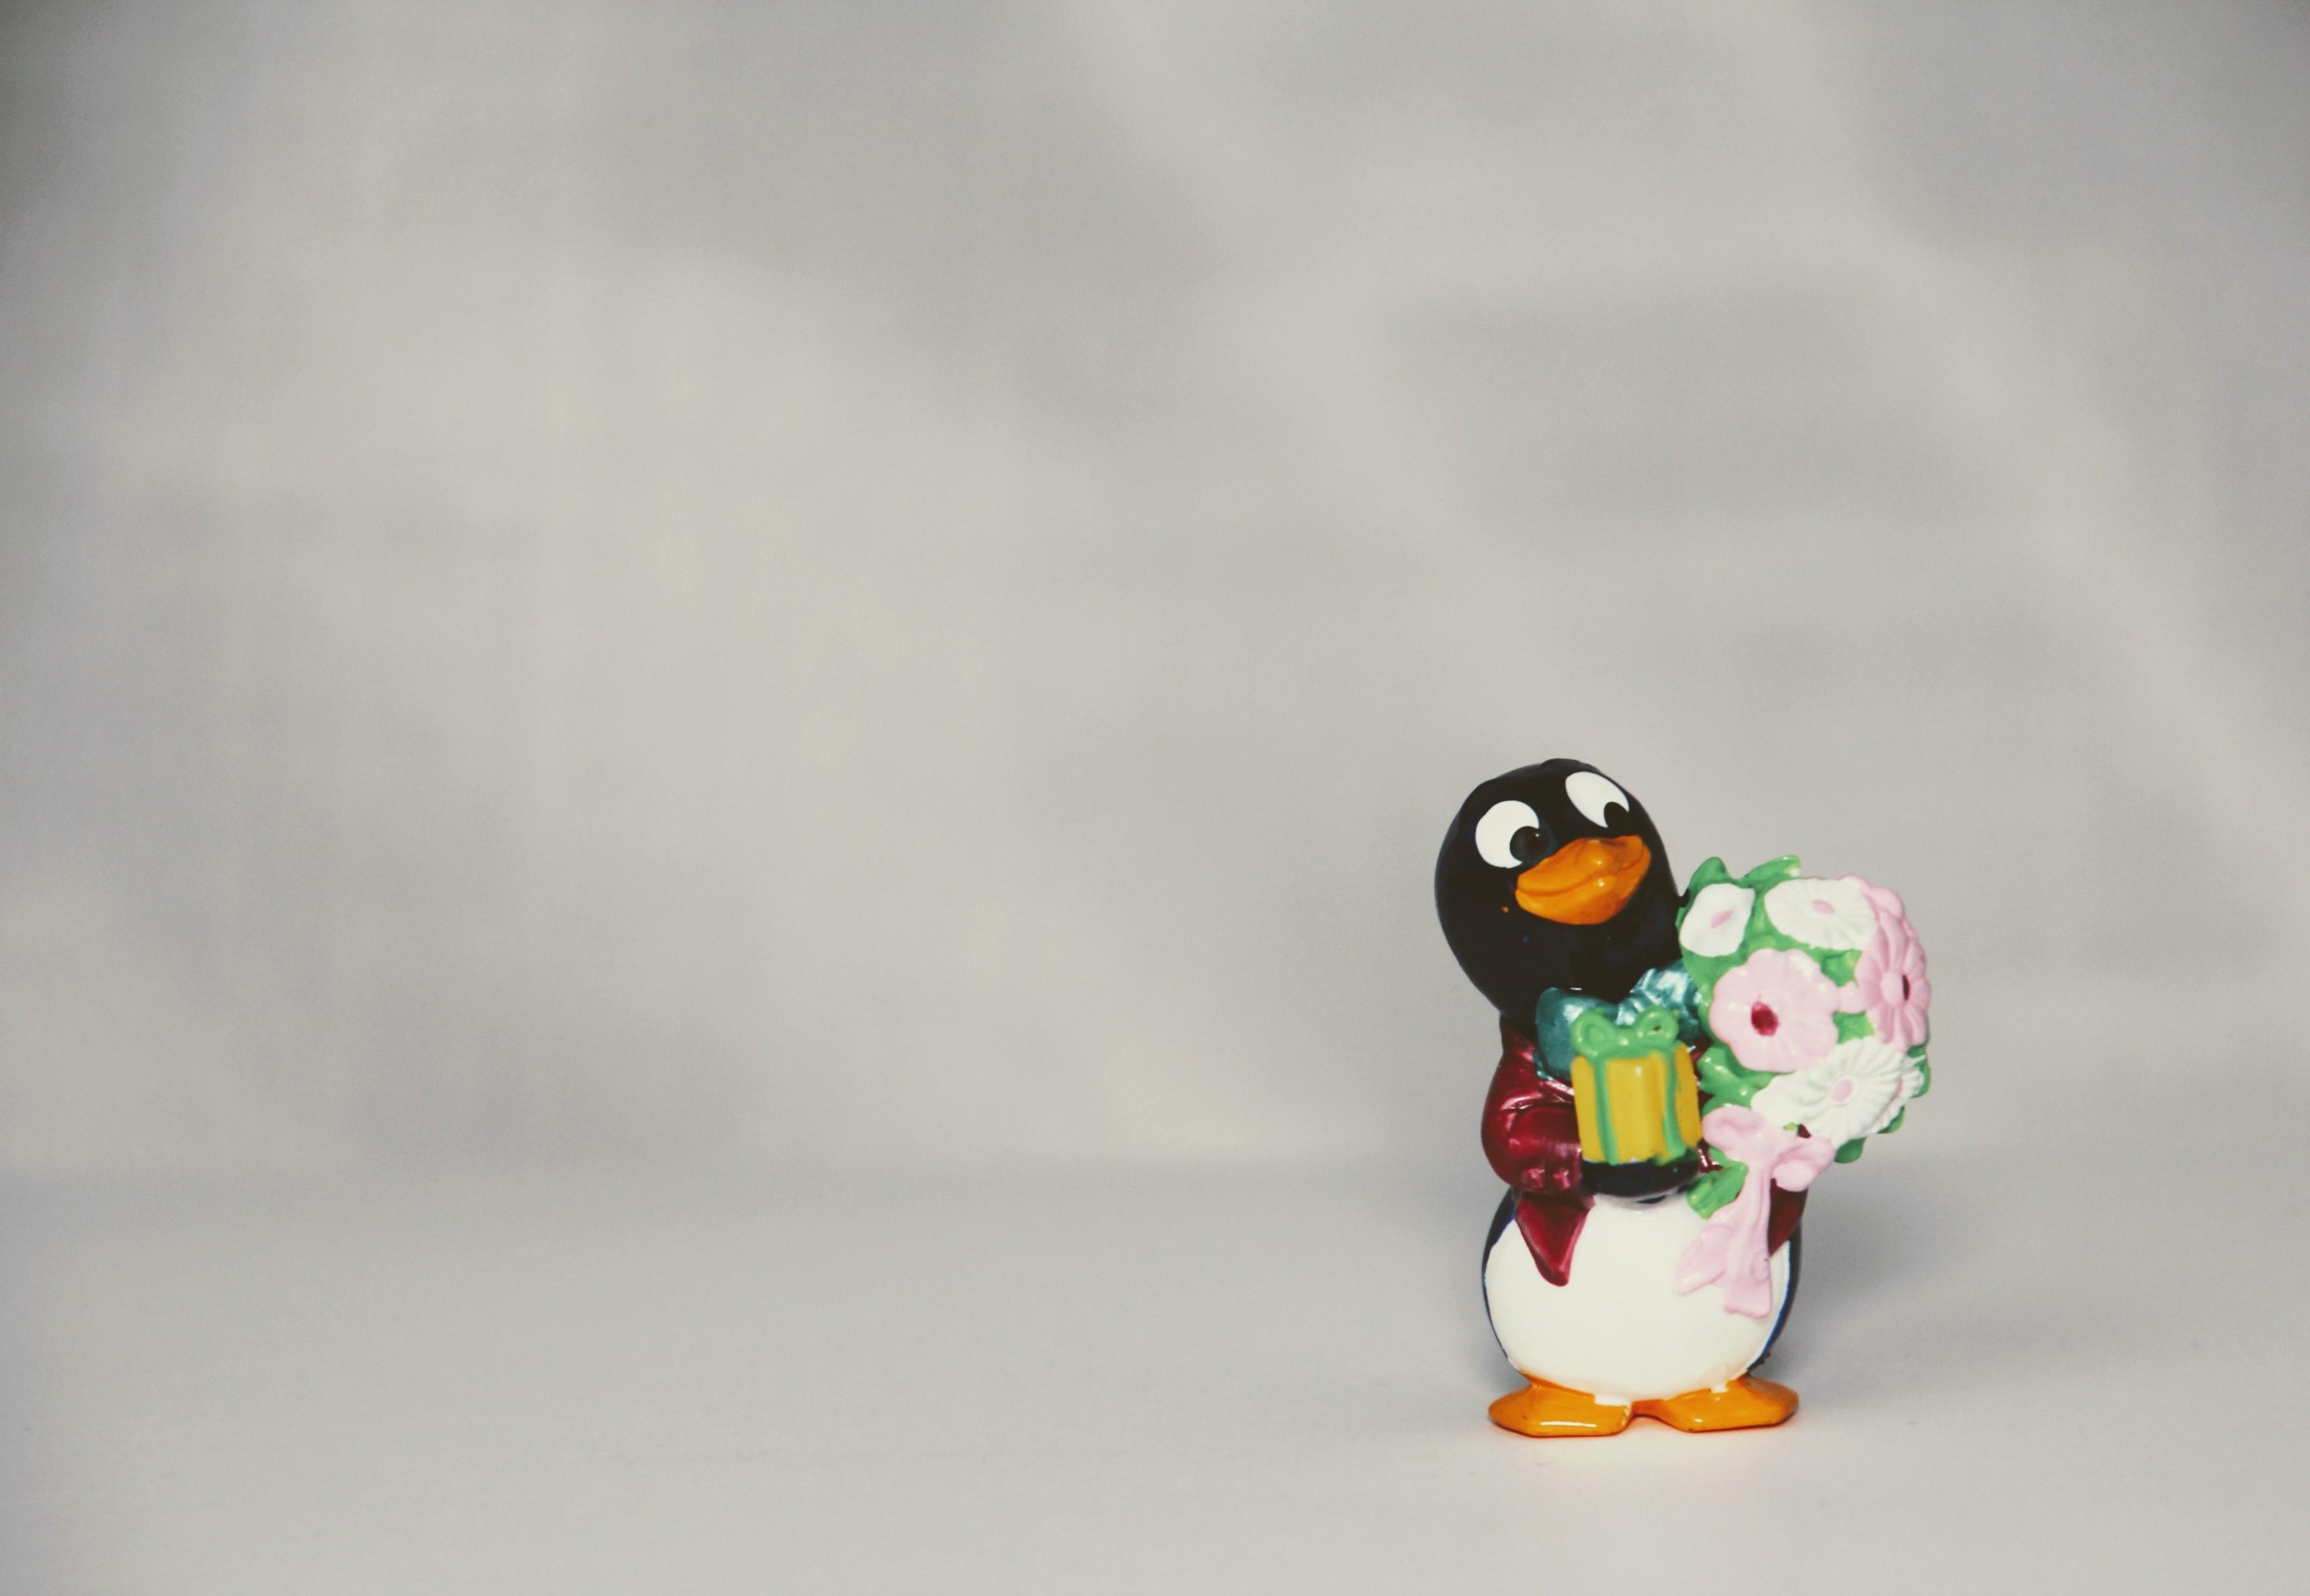 Download 3530x2439 Penguin Figure, Toy Wallpaper